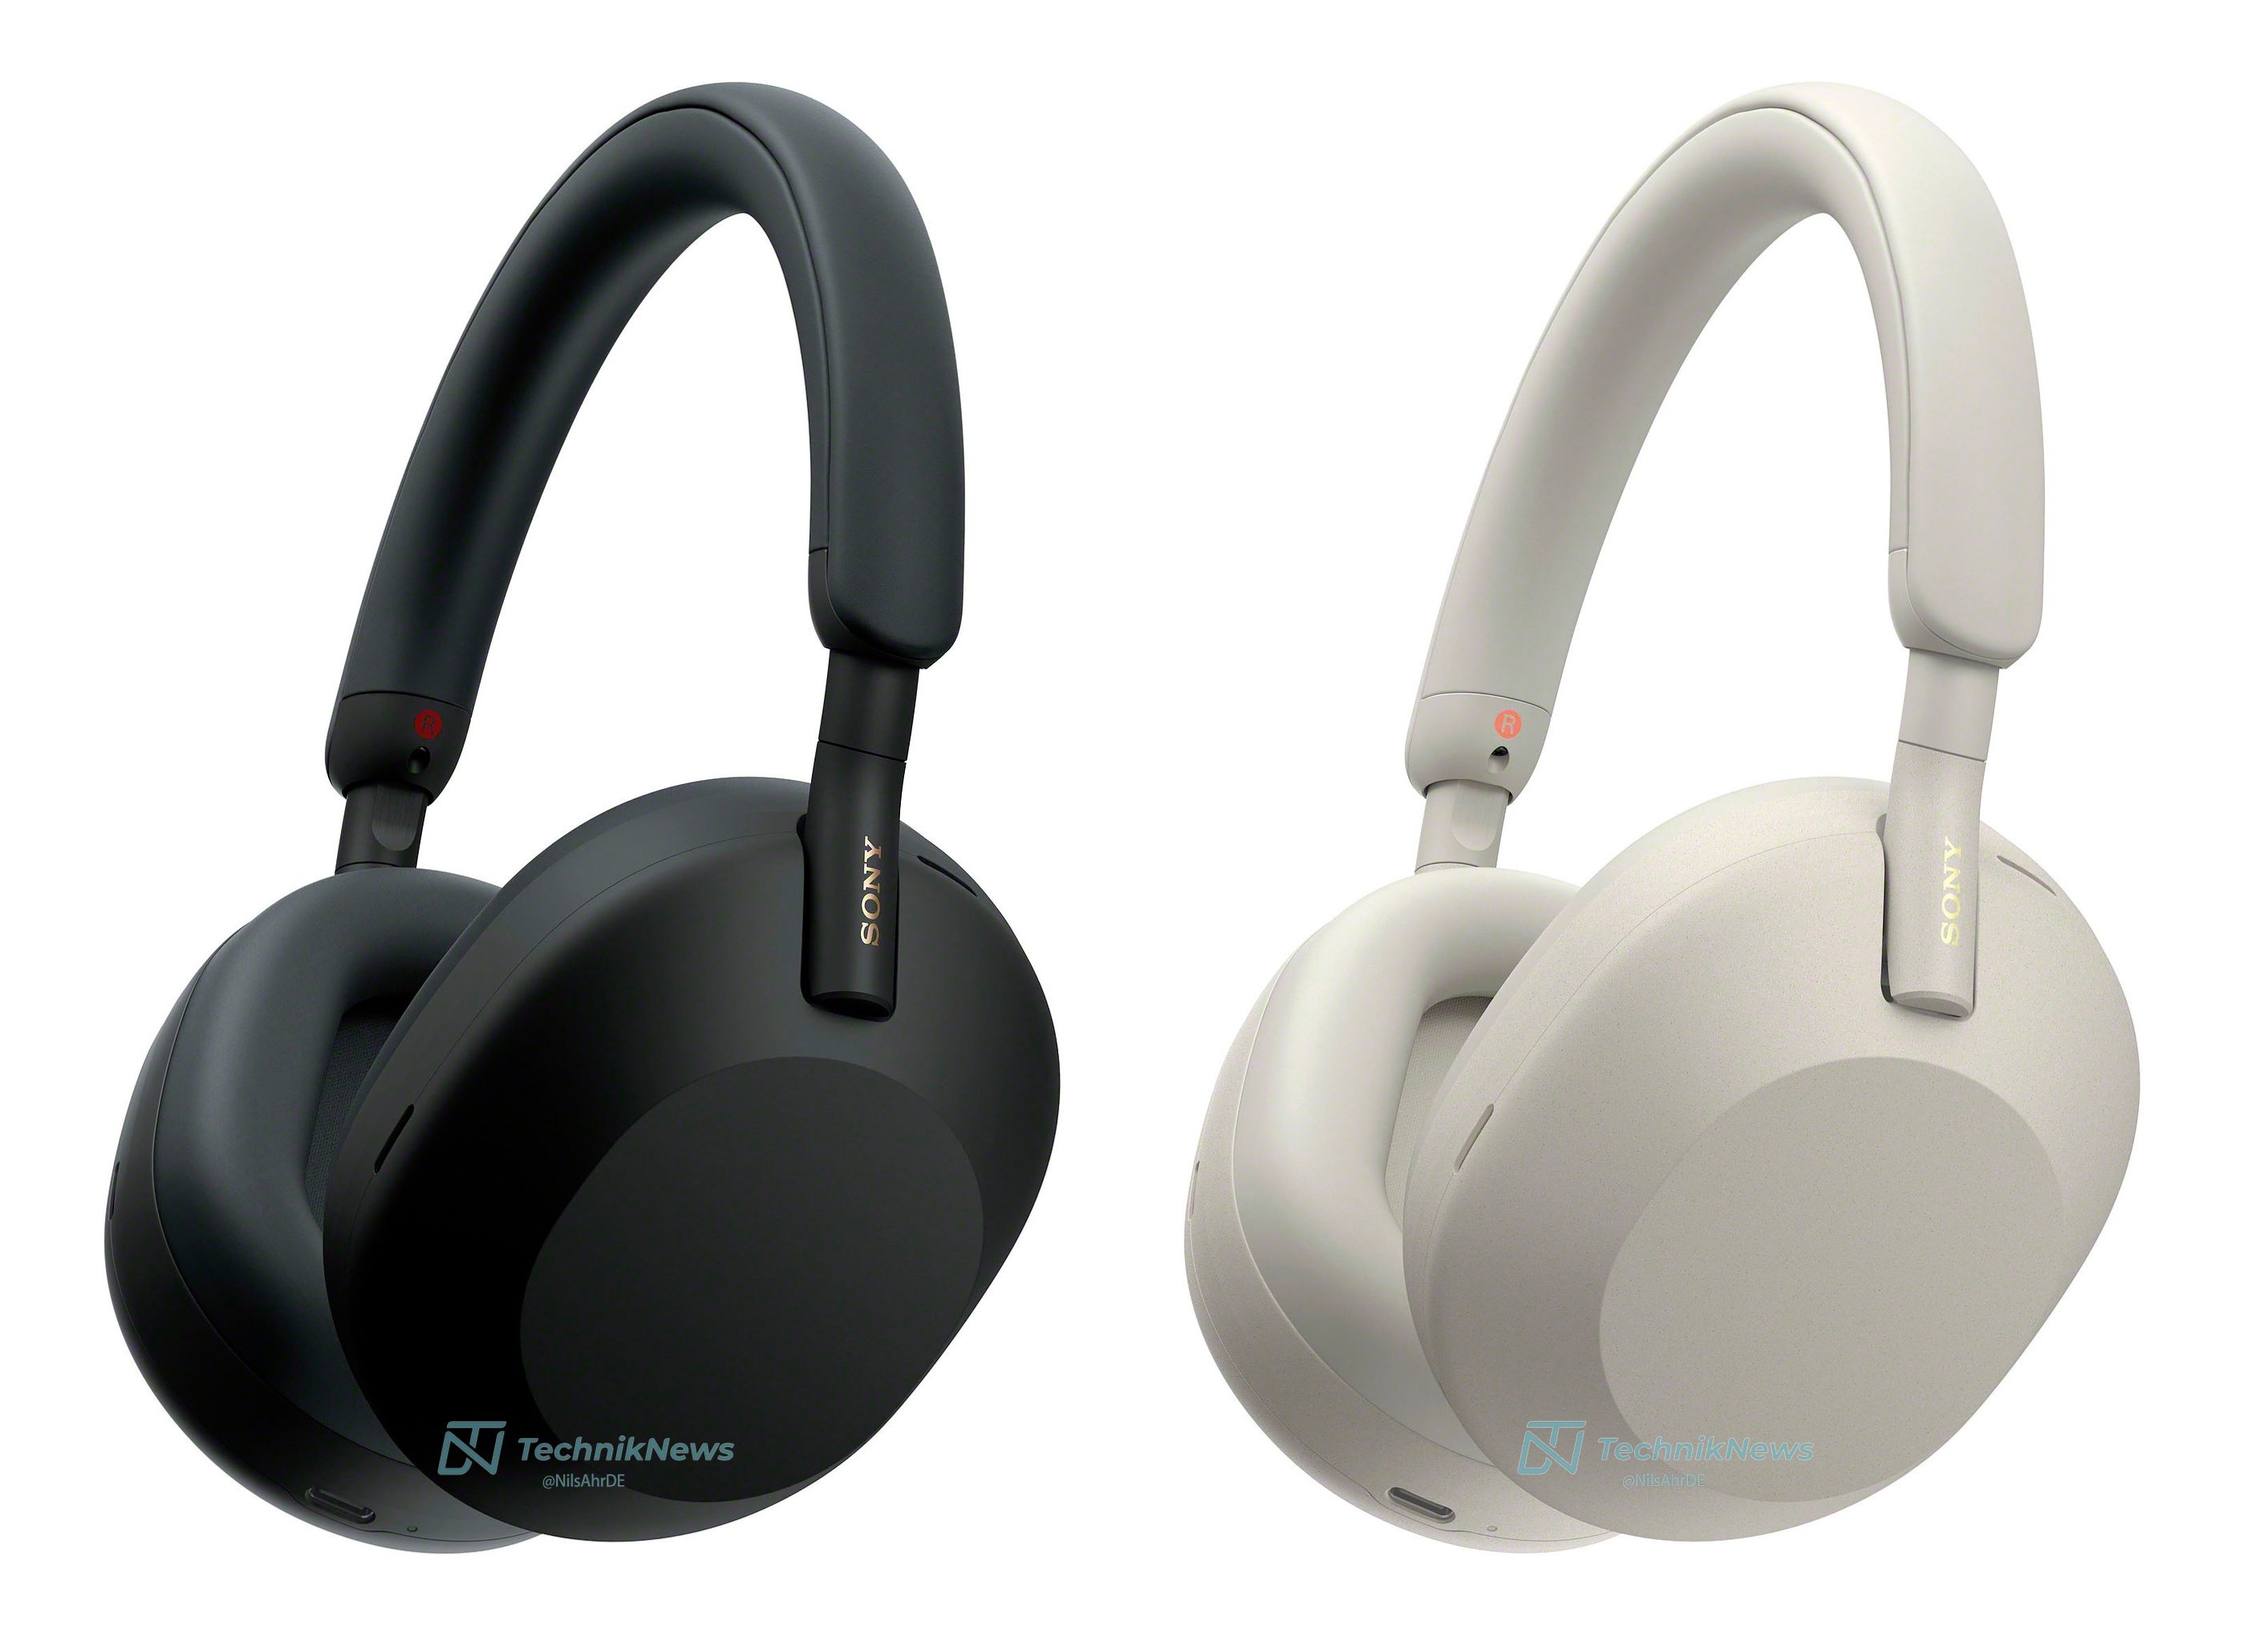 Nuevo diseño y autonomía de hasta 40 horas con ANC: renders y especificaciones de los auriculares Sony WH-1000XM5 aparecieron en la red